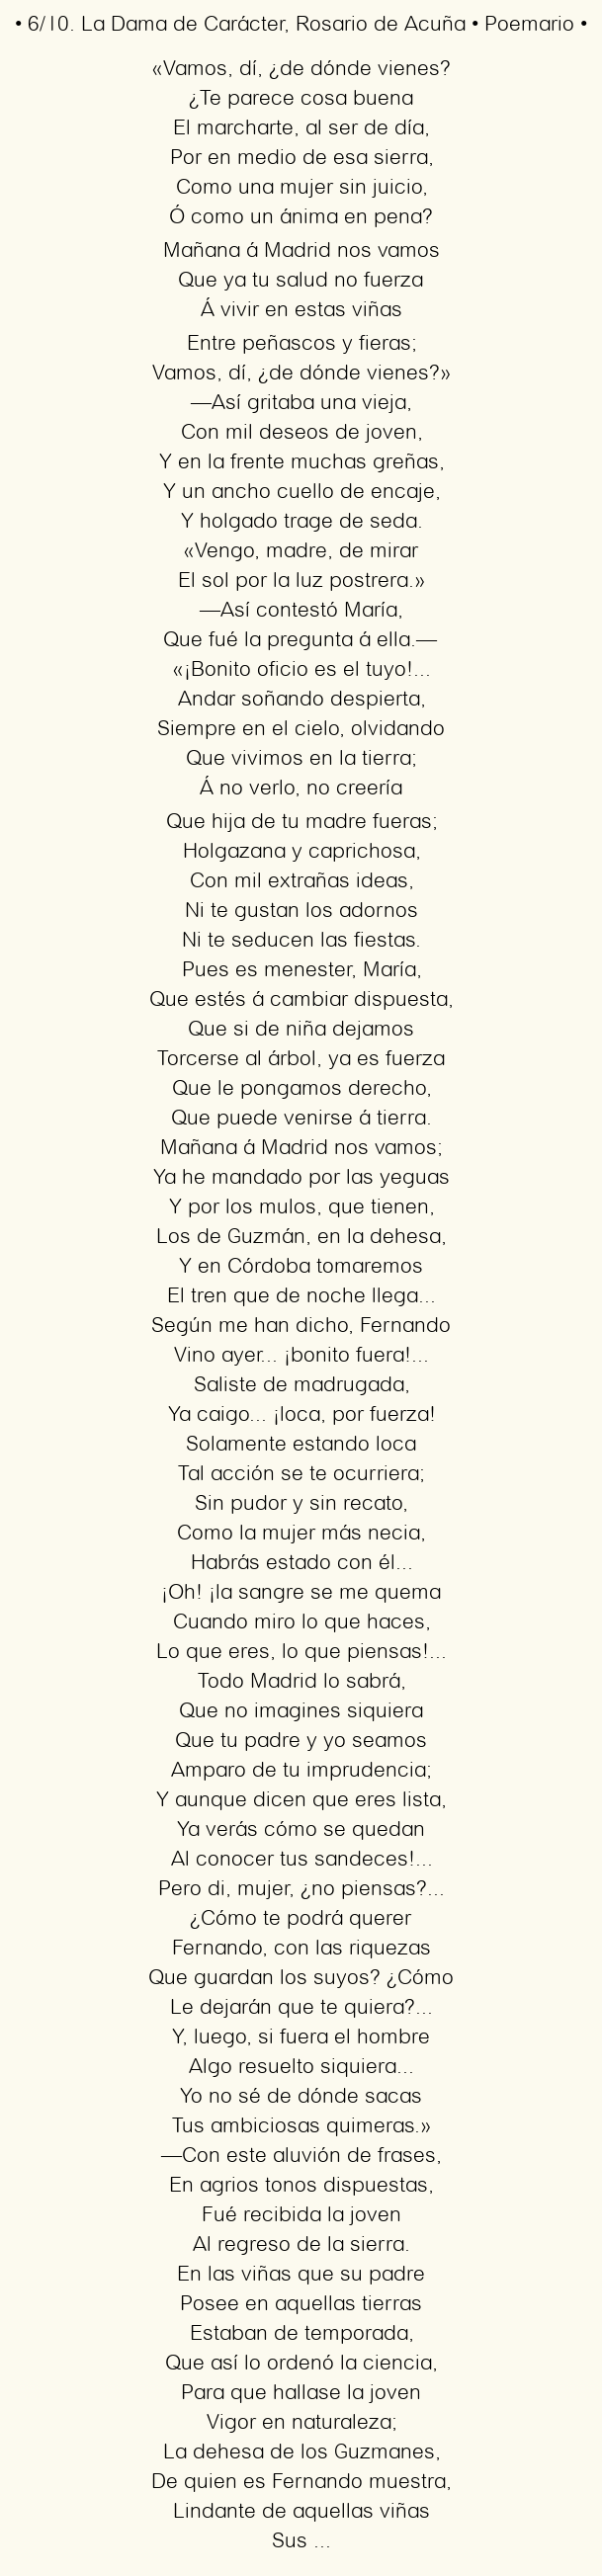 Imagen con el poema 6/10. La Dama de Carácter, por Rosario de Acuña